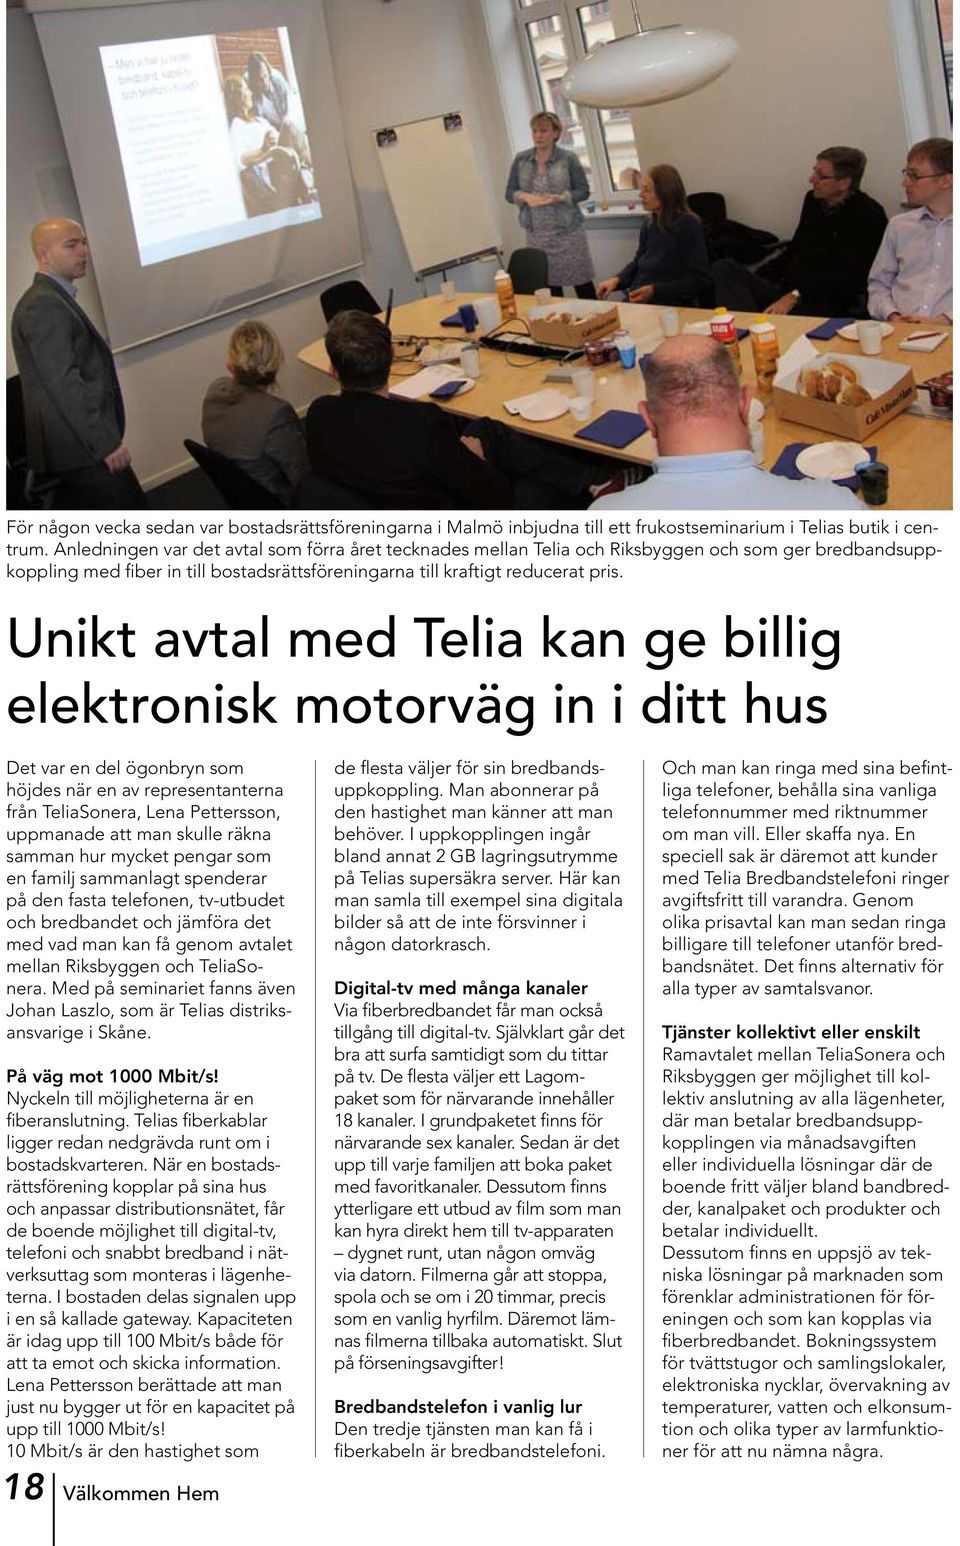 Unikt avtal med Telia kan ge billig elektronisk motorväg in i ditt hus Det var en del ögonbryn som höjdes när en av representanterna från TeliaSonera, Lena Pettersson, uppmanade att man skulle räkna